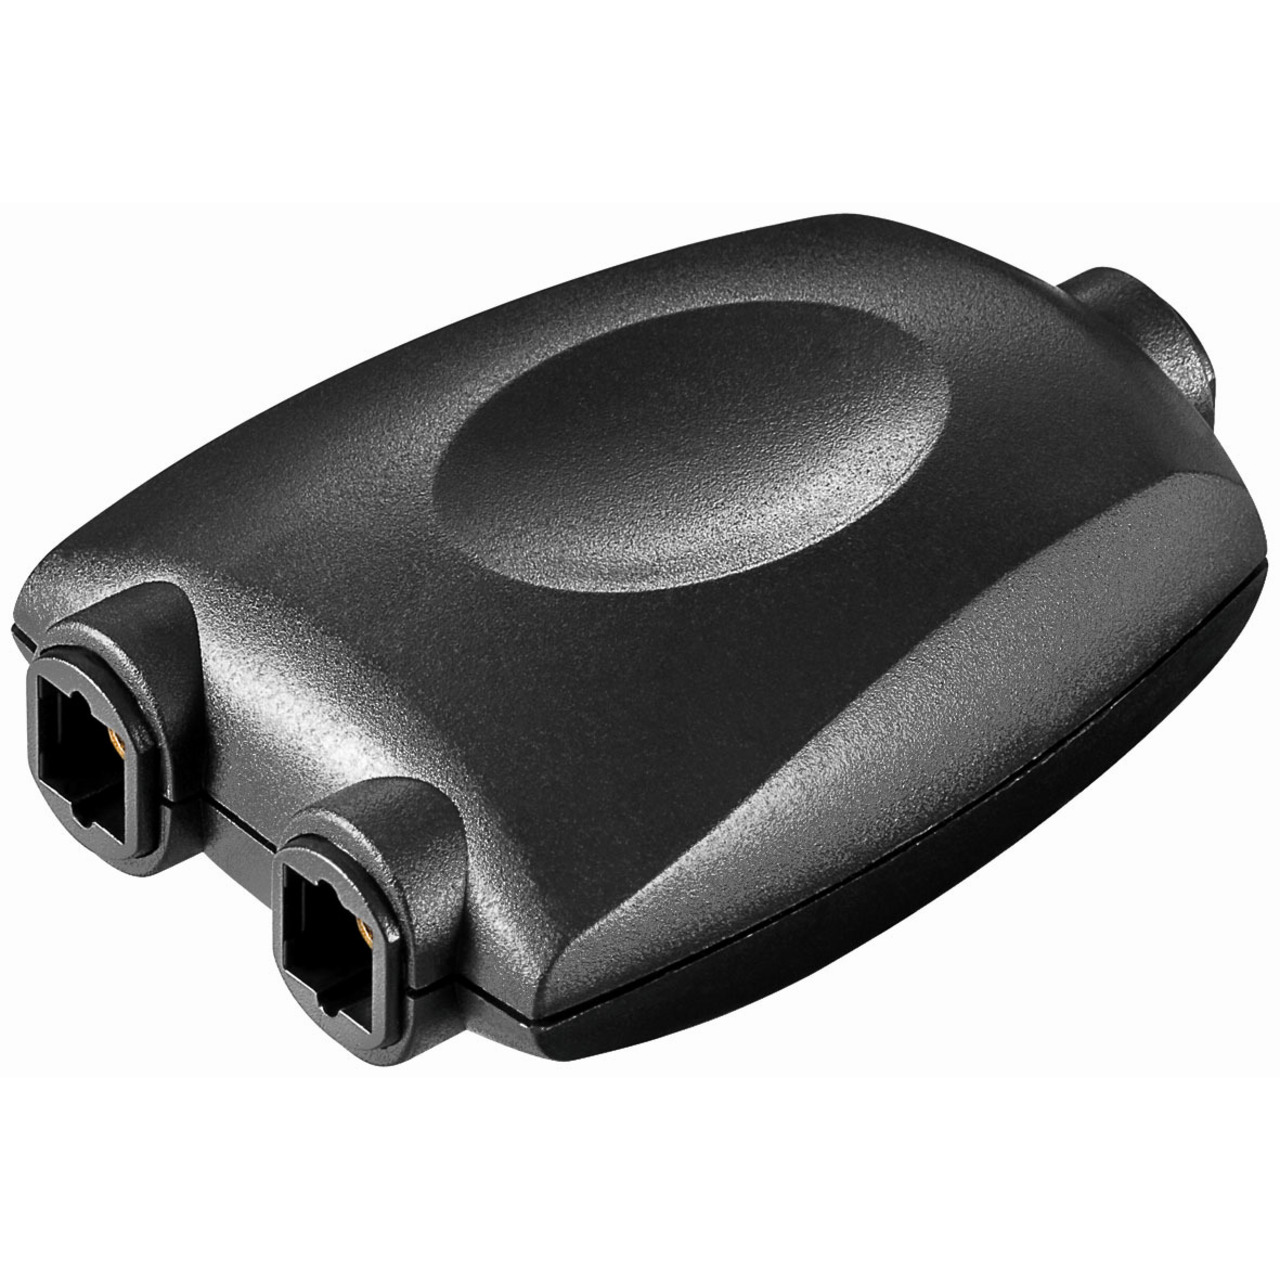 Audio-Adapter mit 2x Toslinkkupplung unter Komponenten